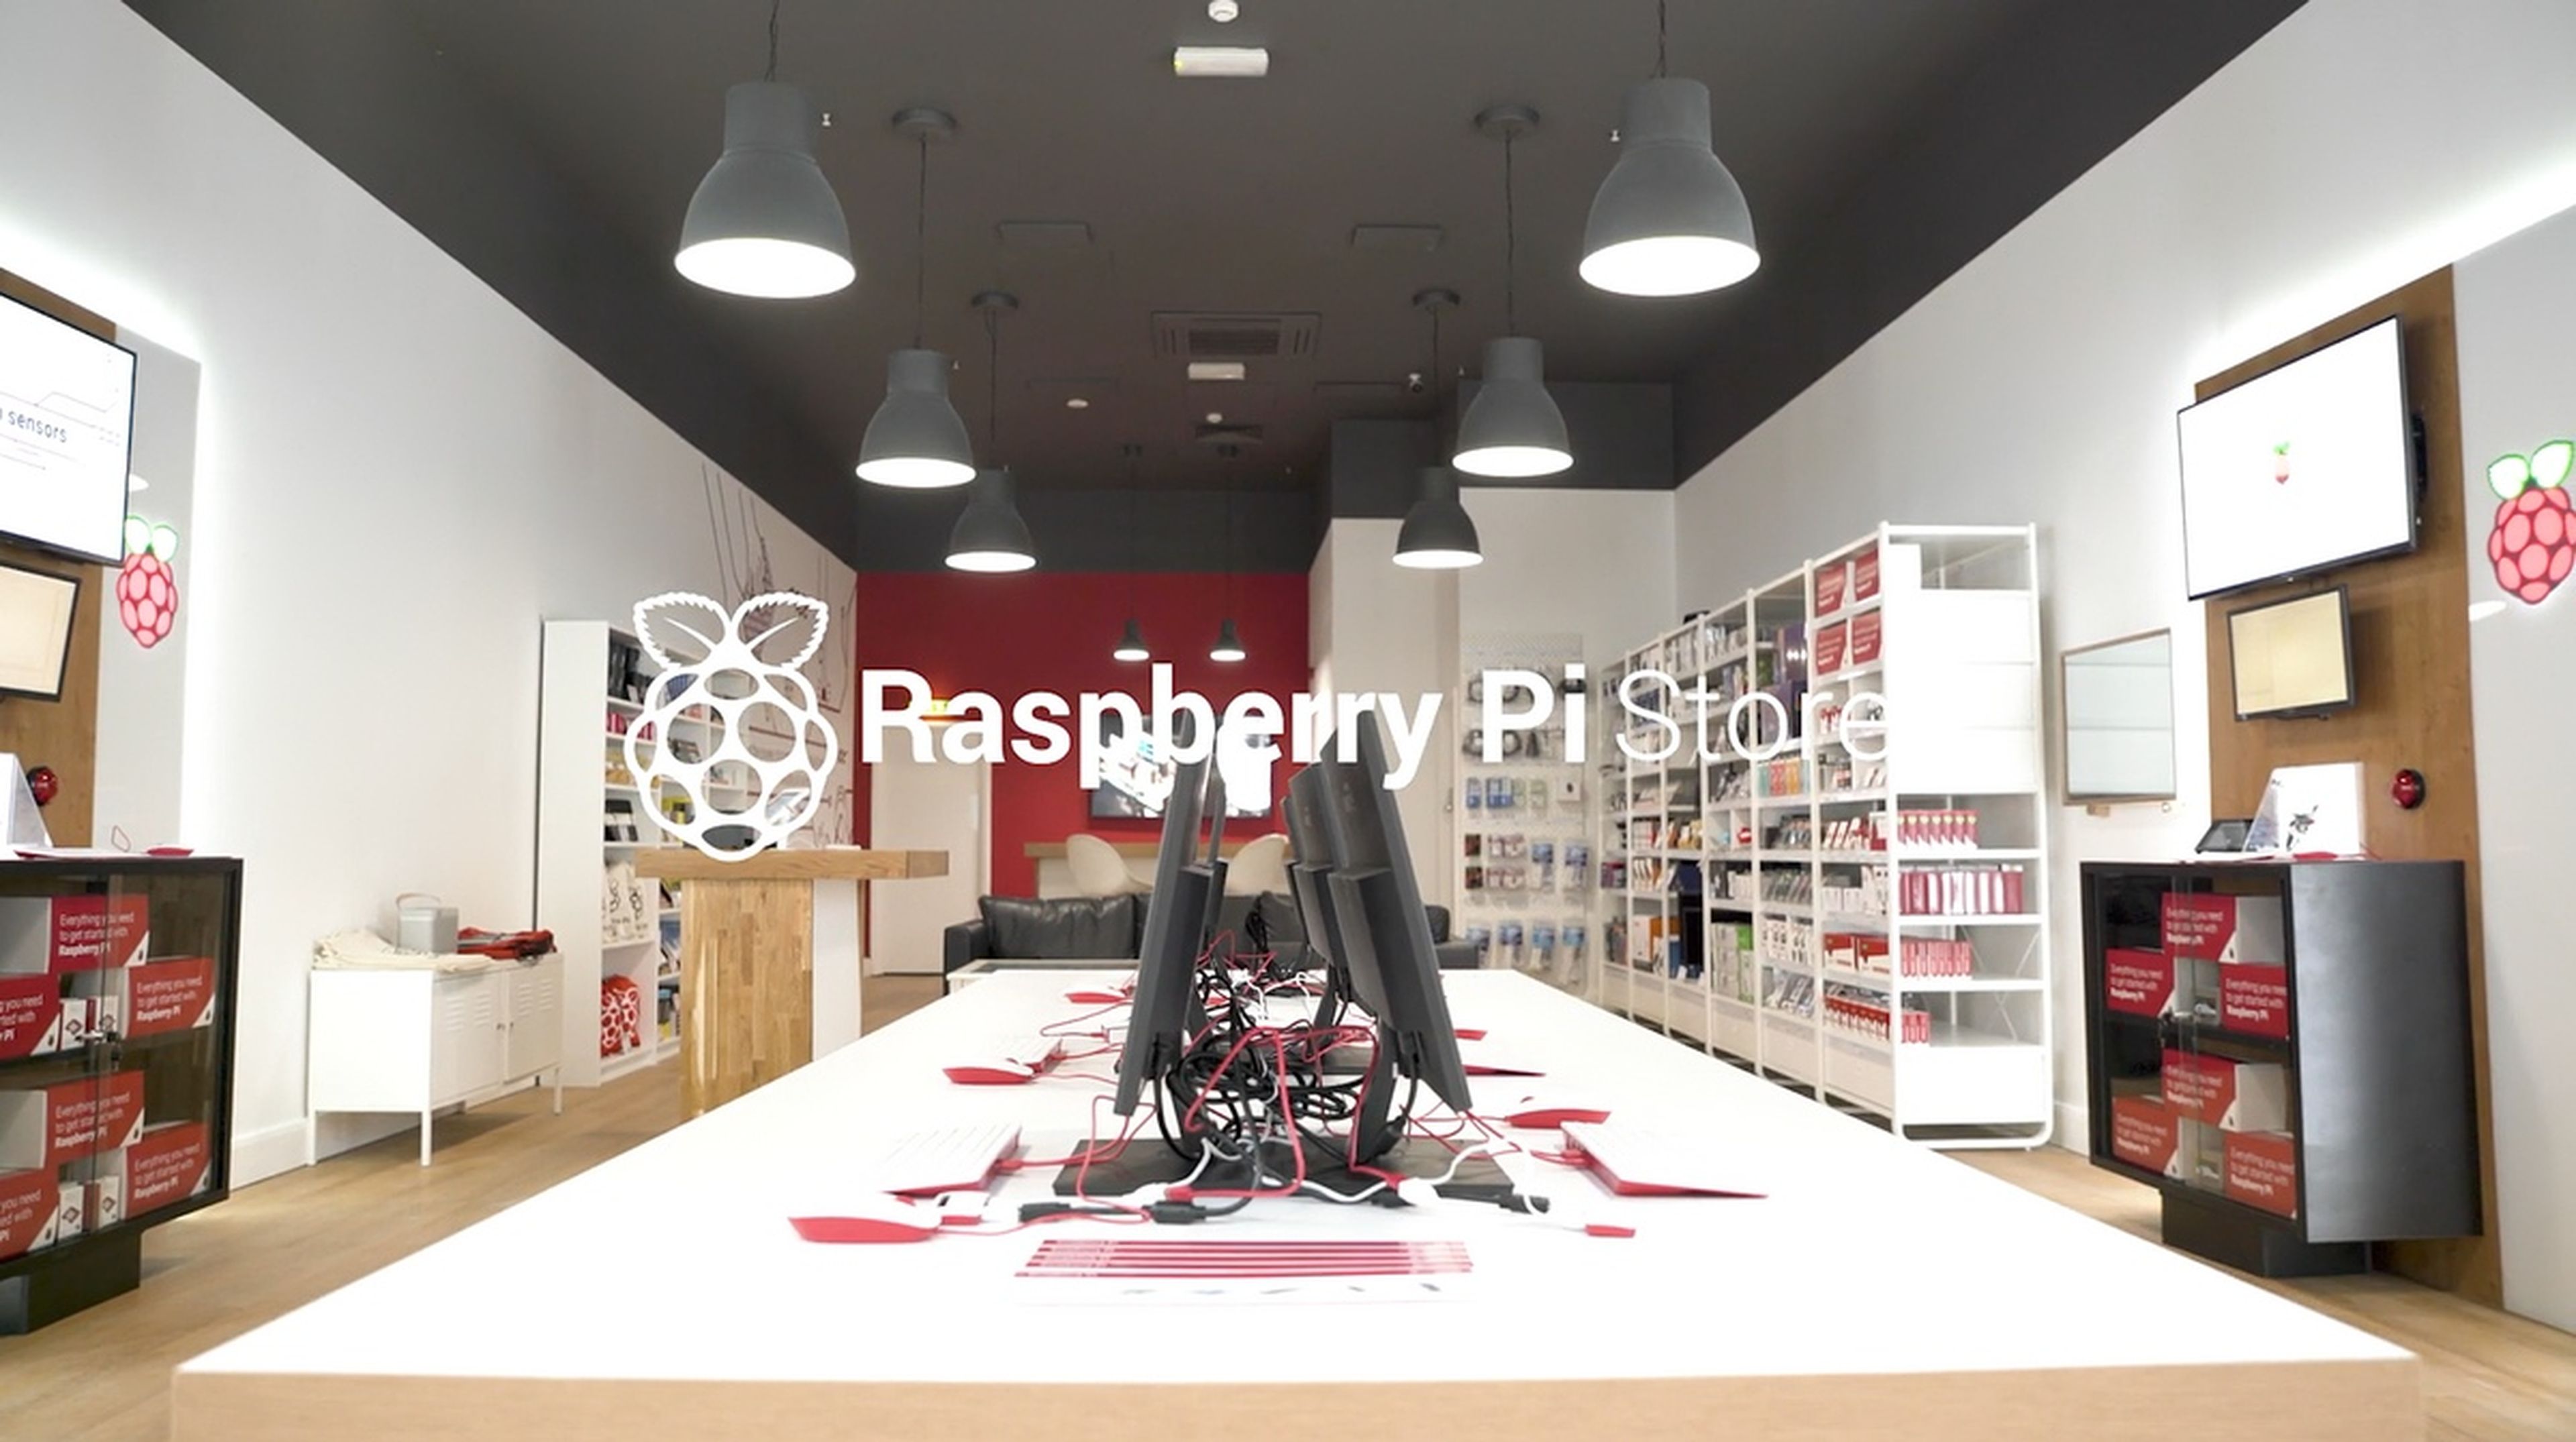 Esta es la primera tienda física de Raspberry Pi